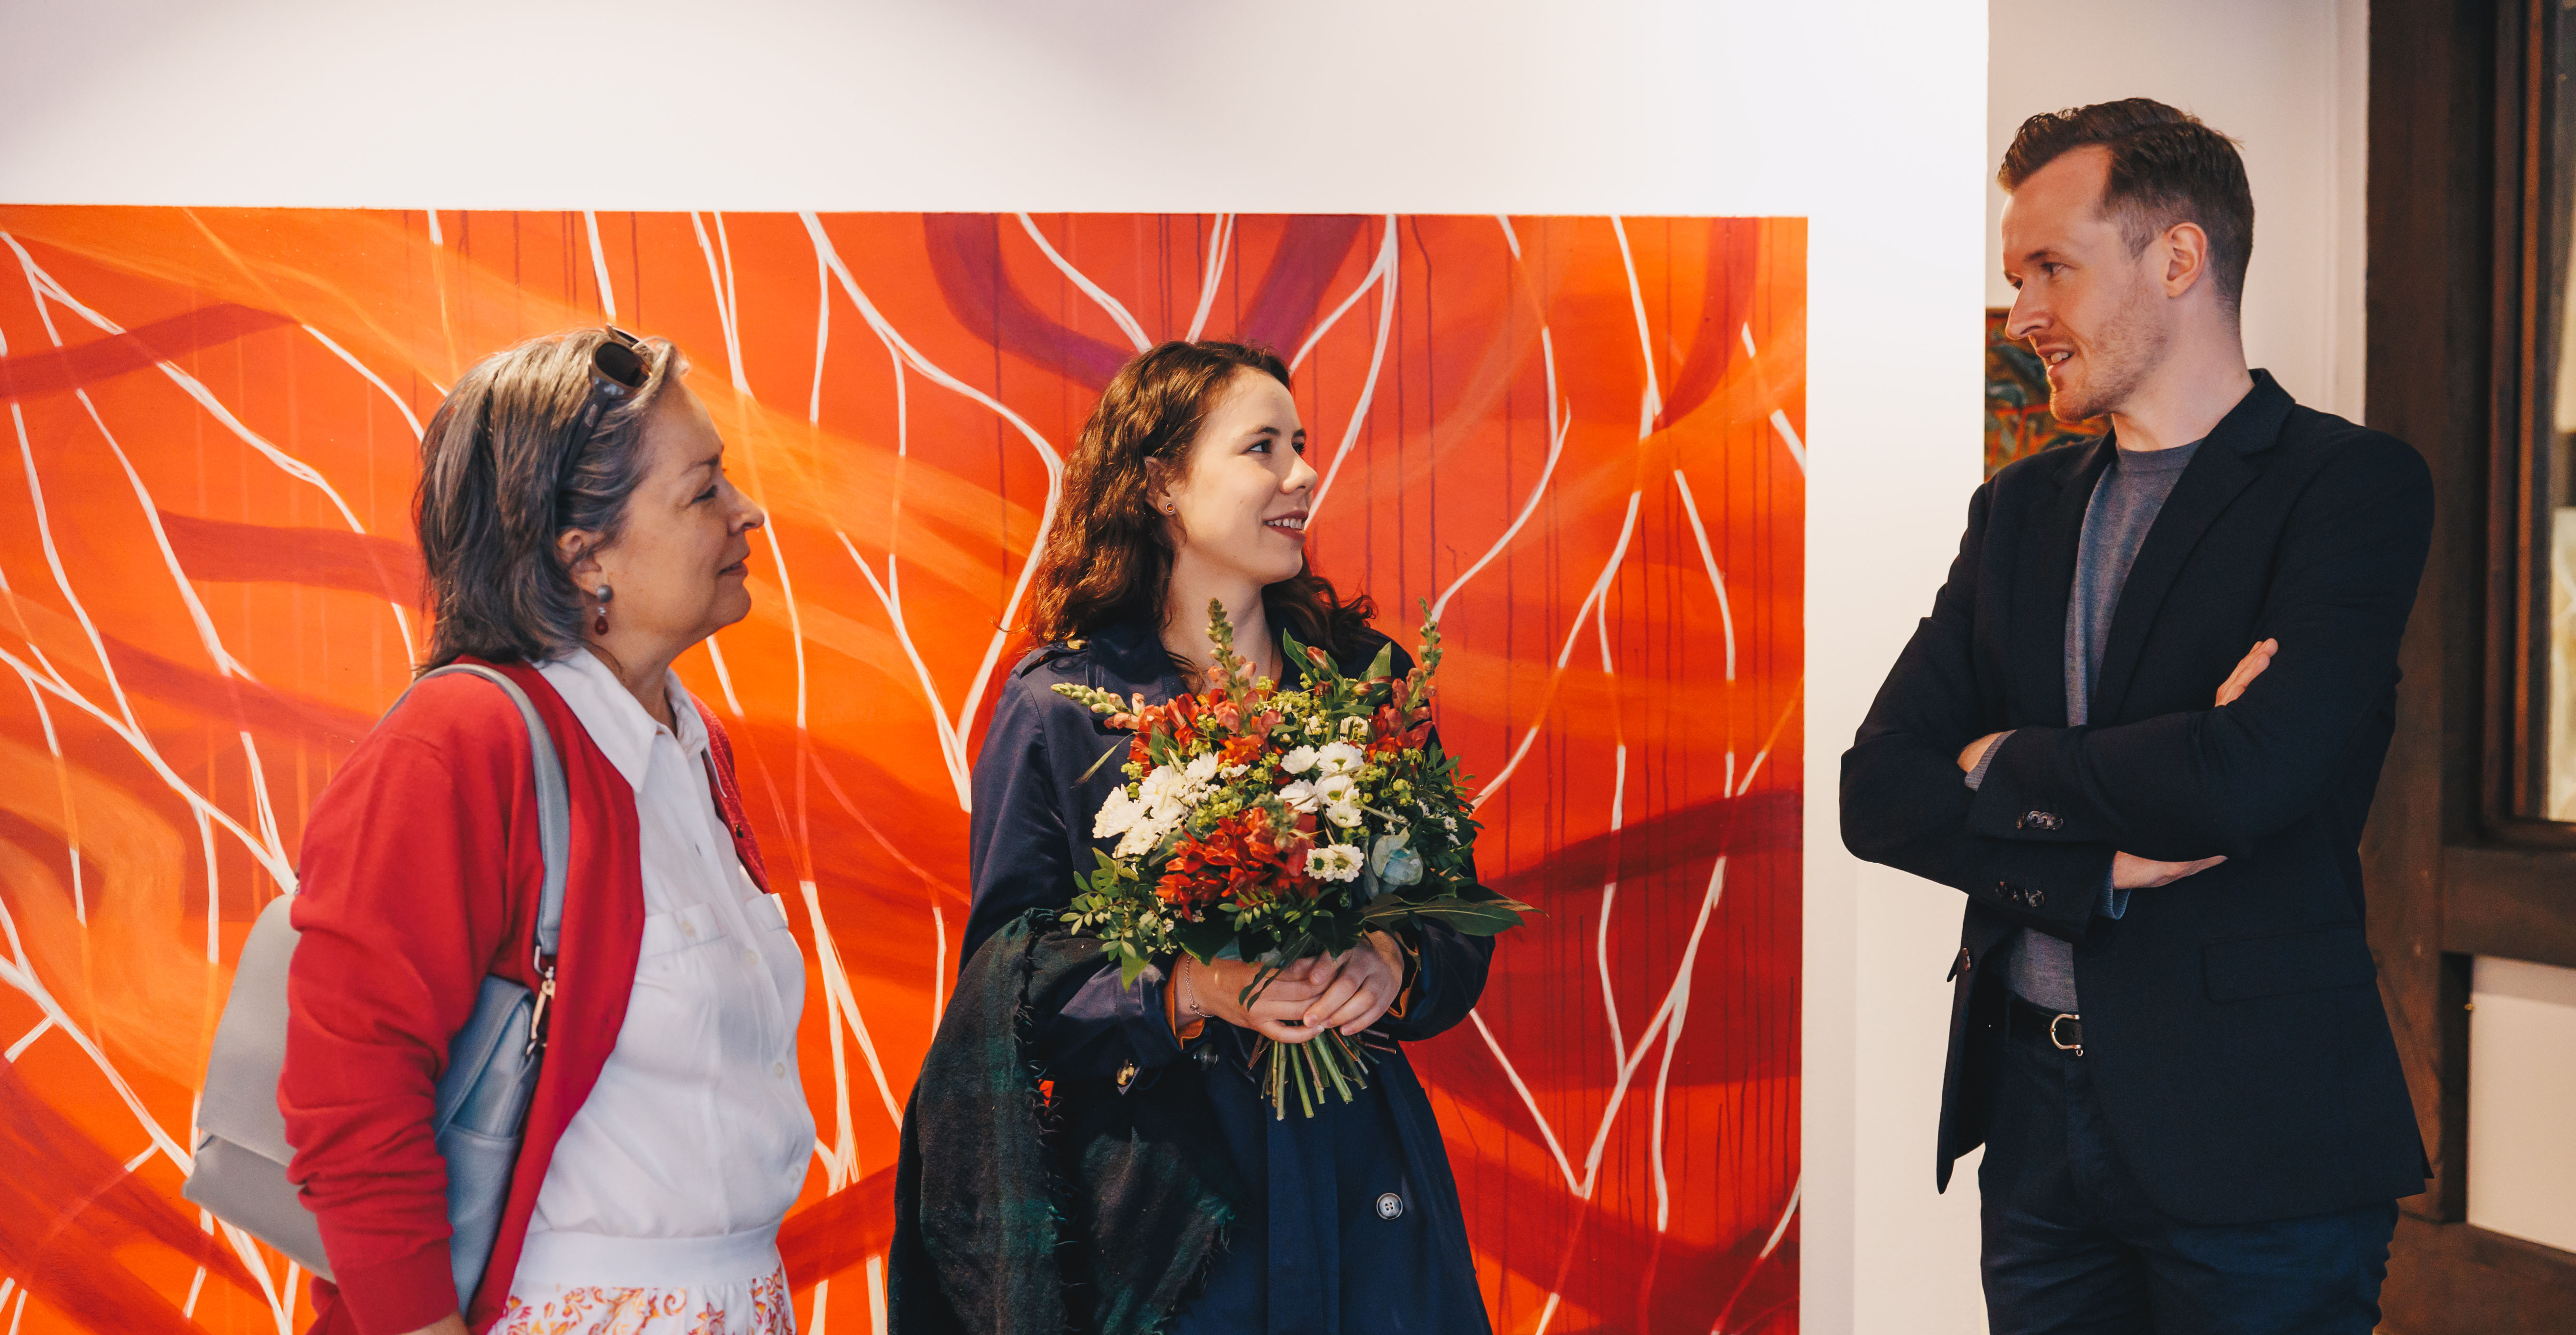 KWS Vorstandsmitglied Eva Kienle, Künstlerin Katharina Kühne und Kunsthistoriker Alexander Leinemann, im Hintergrund Magenta Forest, Malerei auf Leinwand*